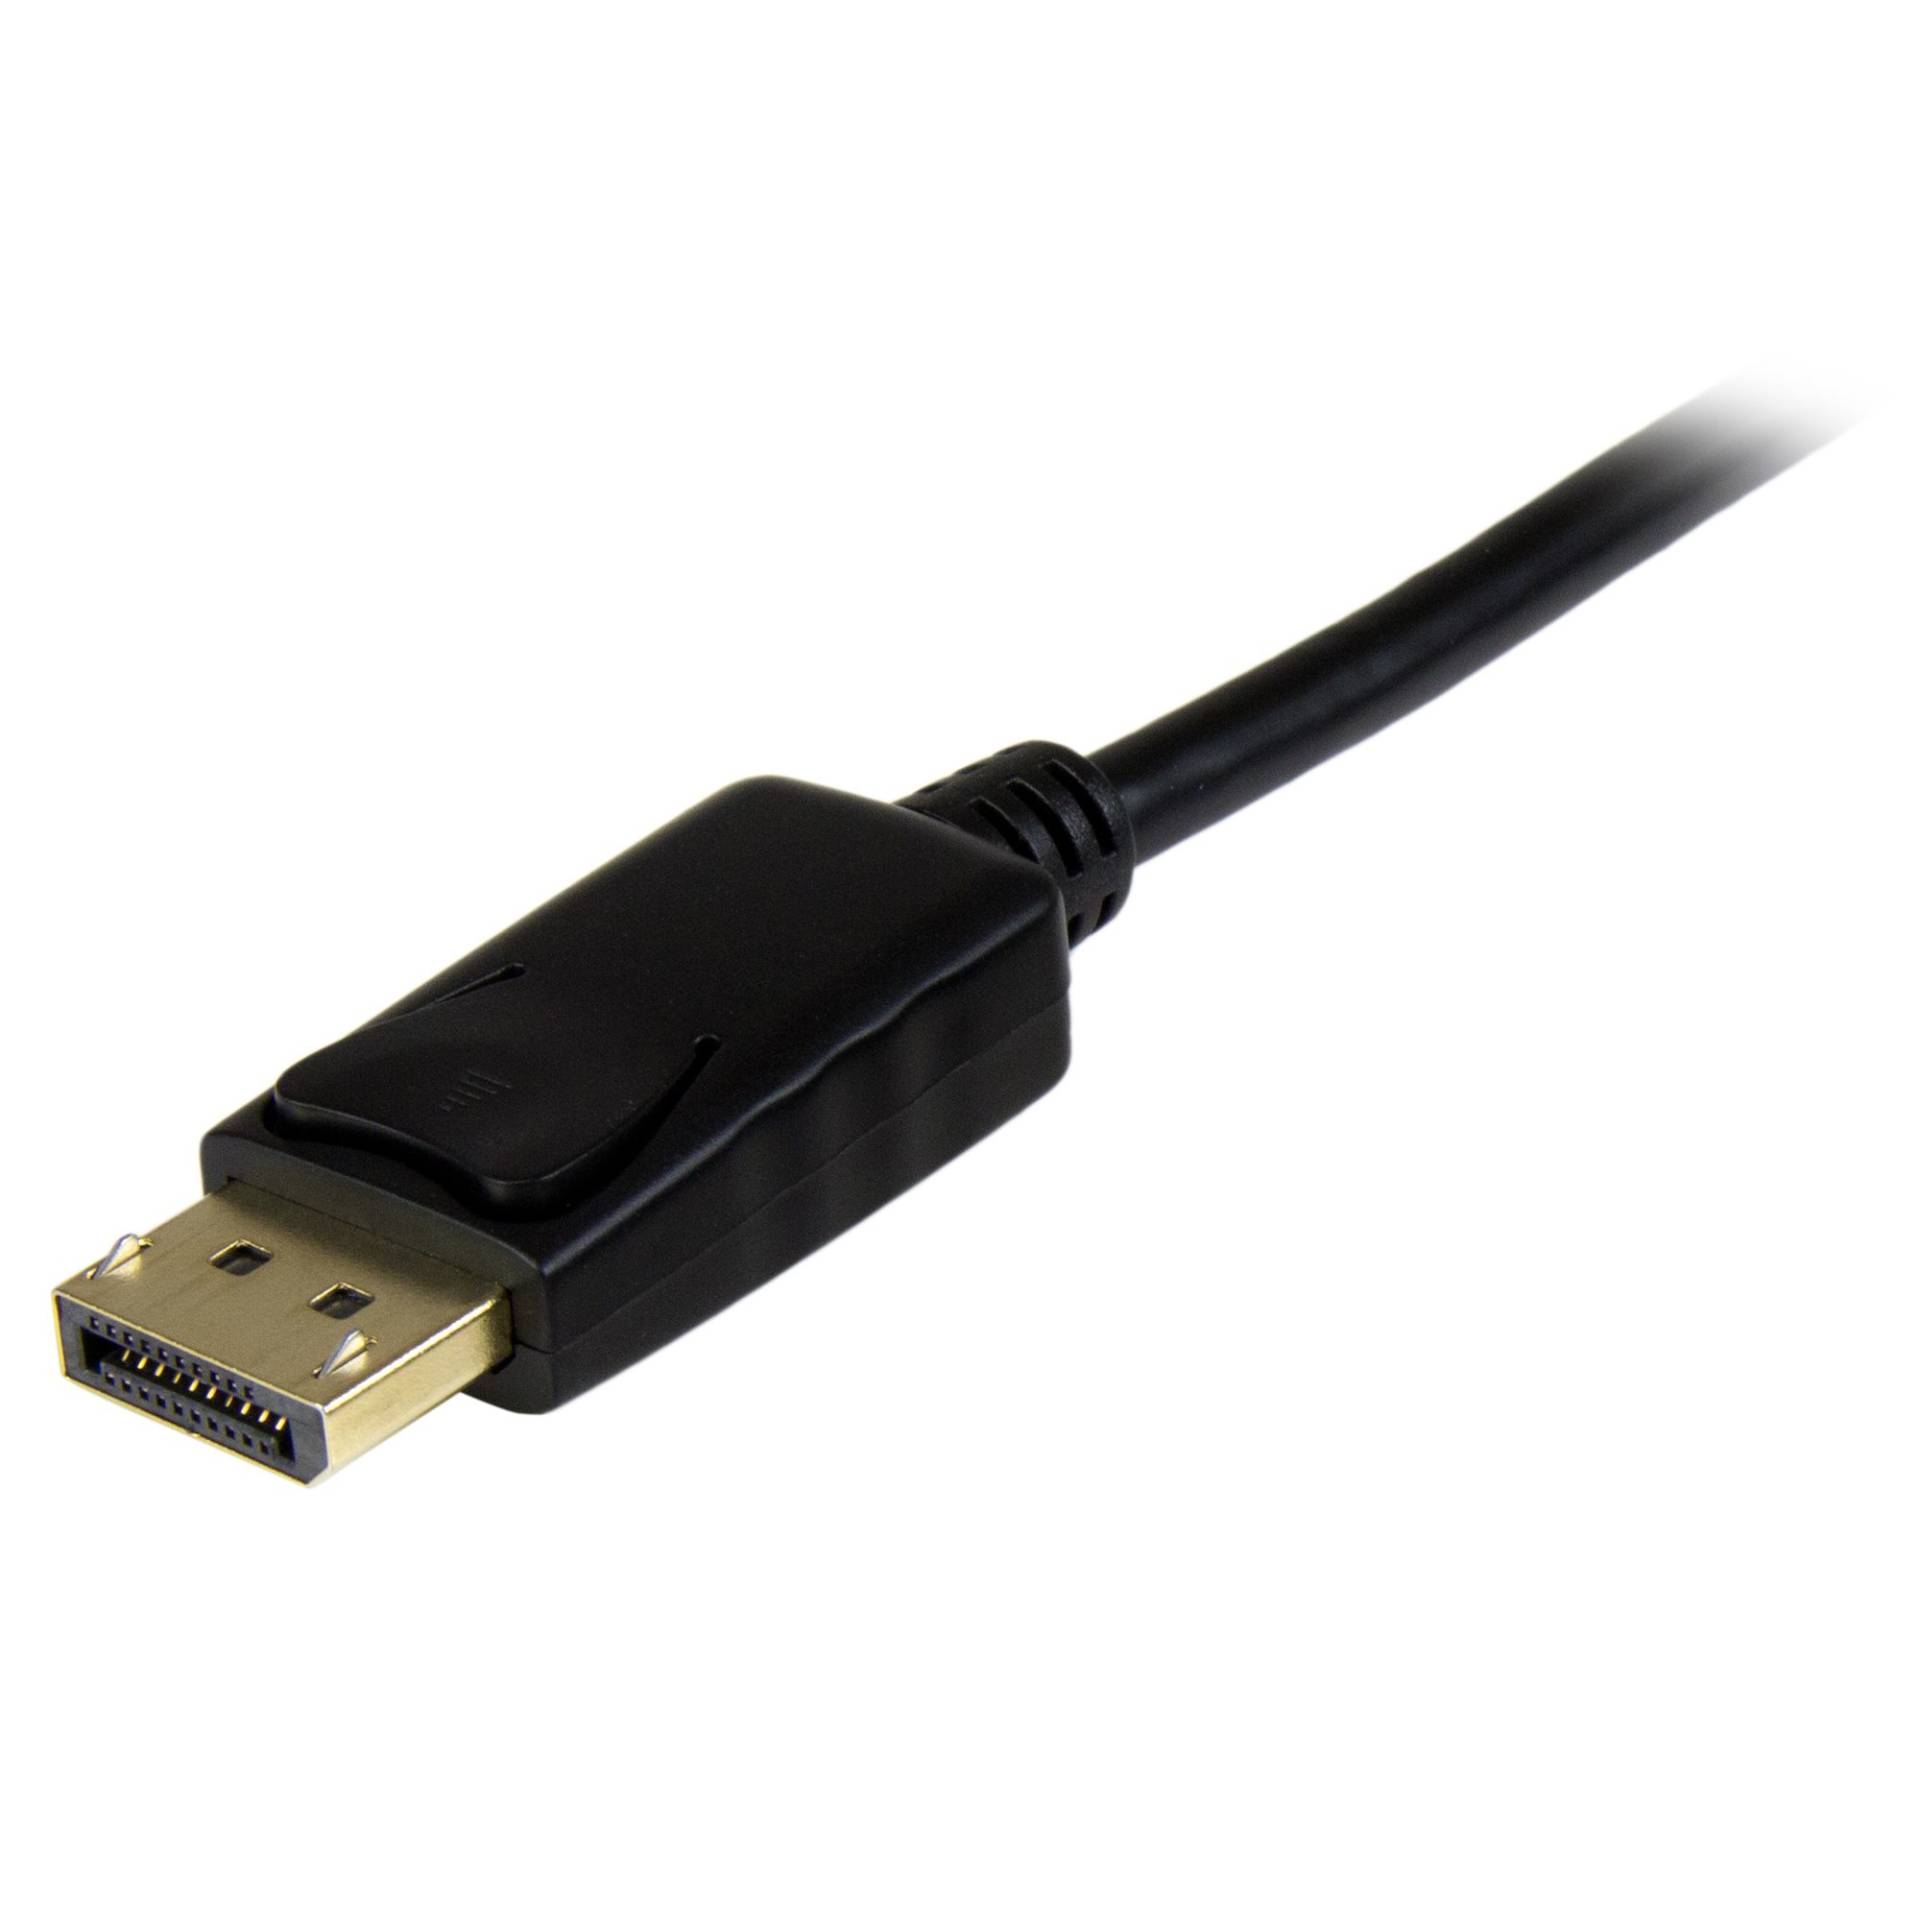 AB121GEN23 – CABLE DE 3M ADAPTADOR DISPLAYPORT A HDMI.03